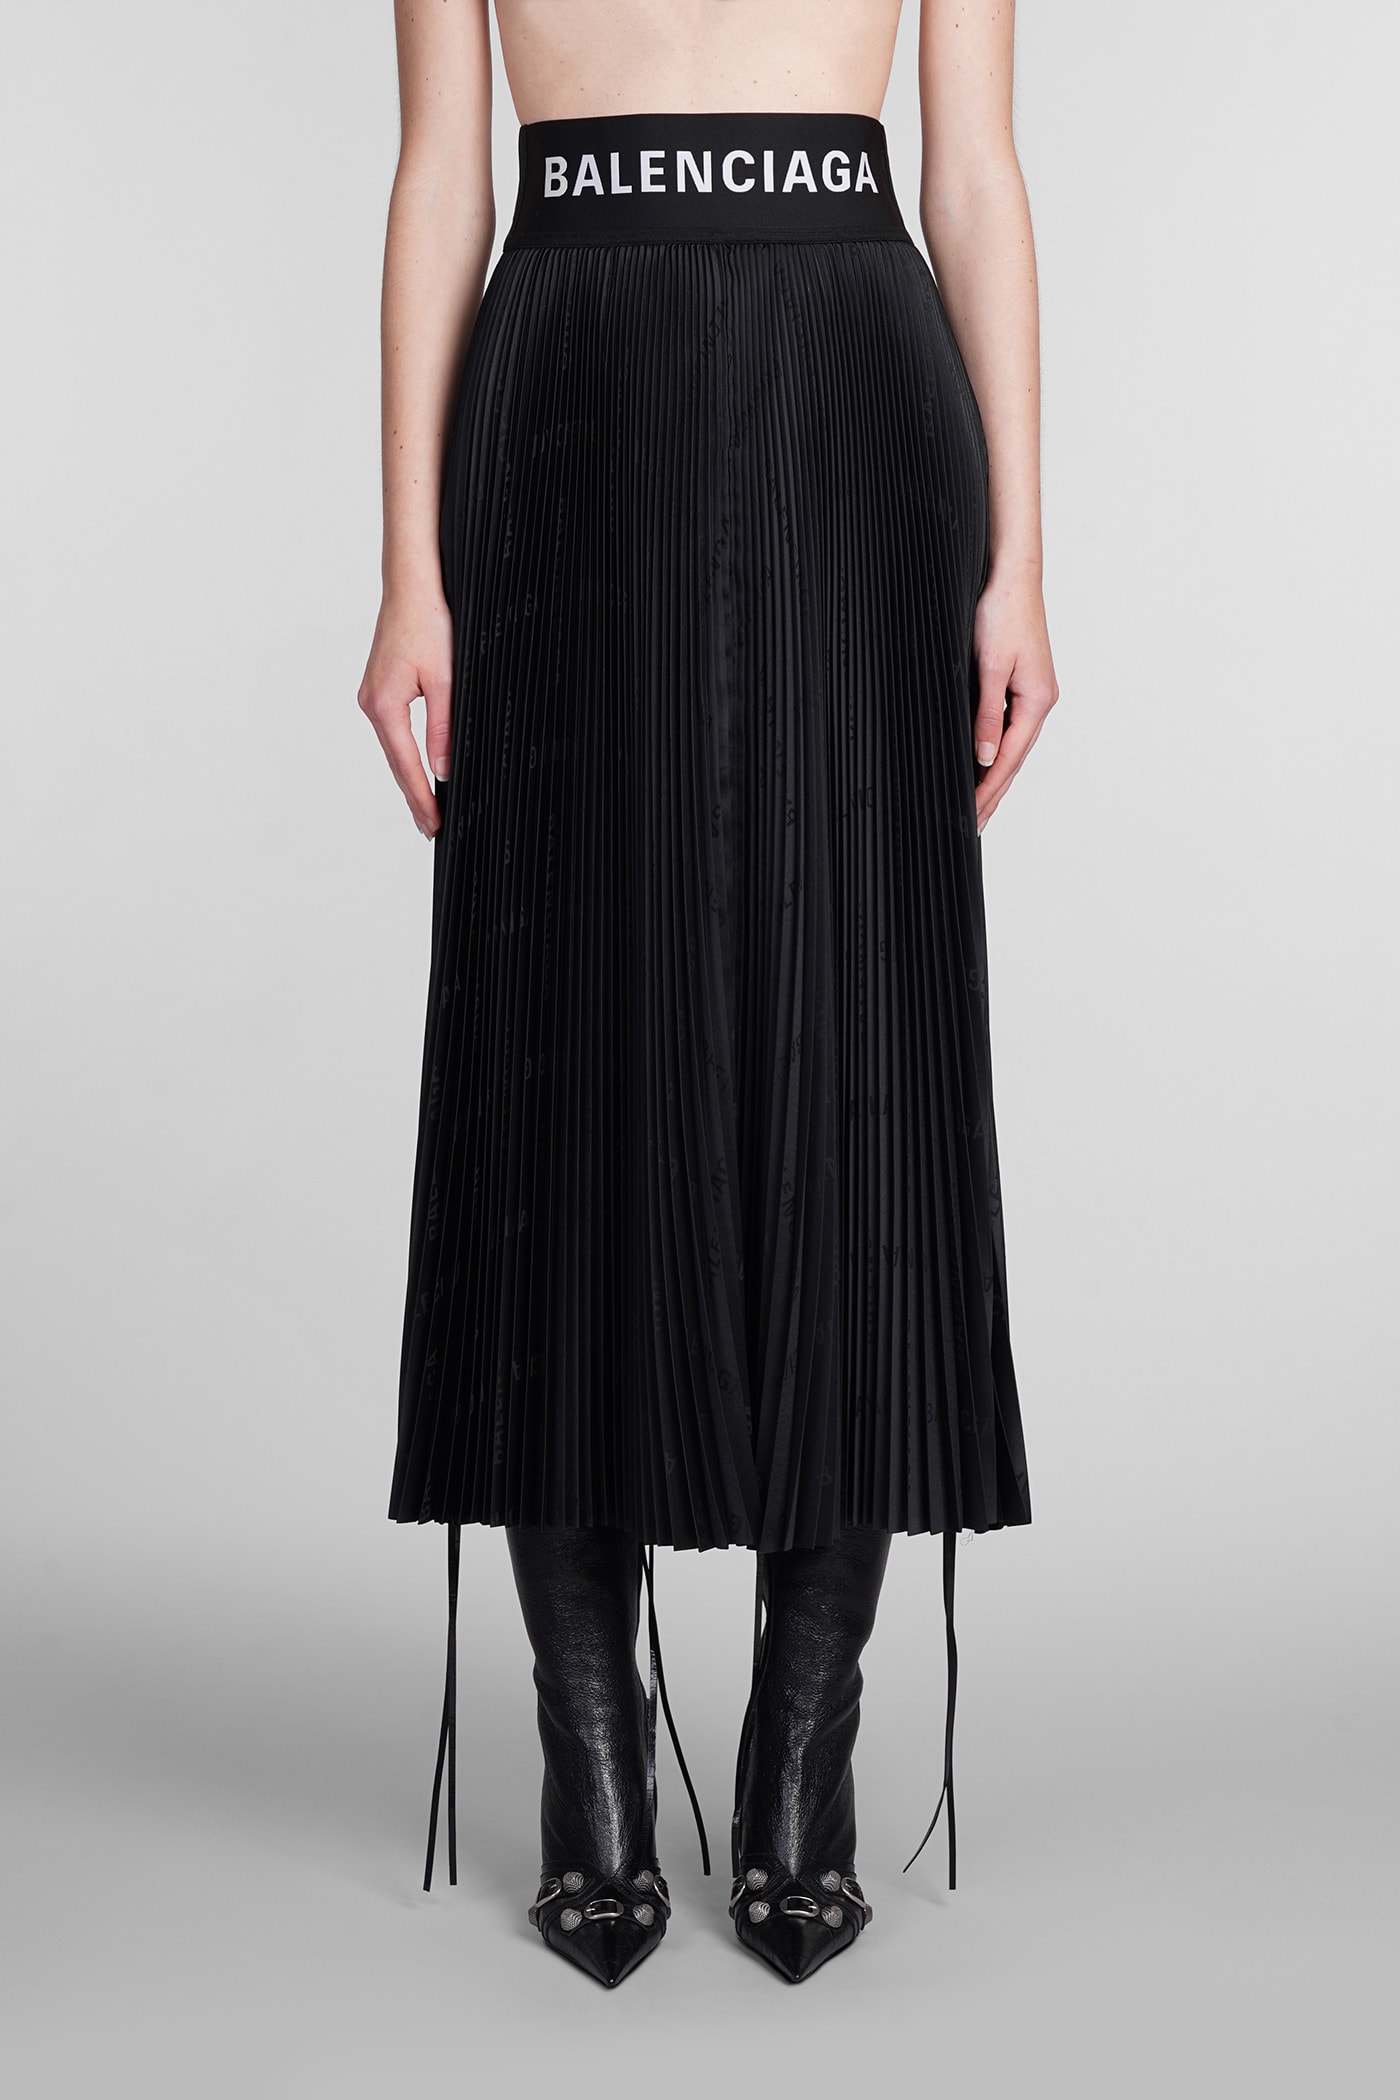 Balenciaga Skirt In Black Polyester